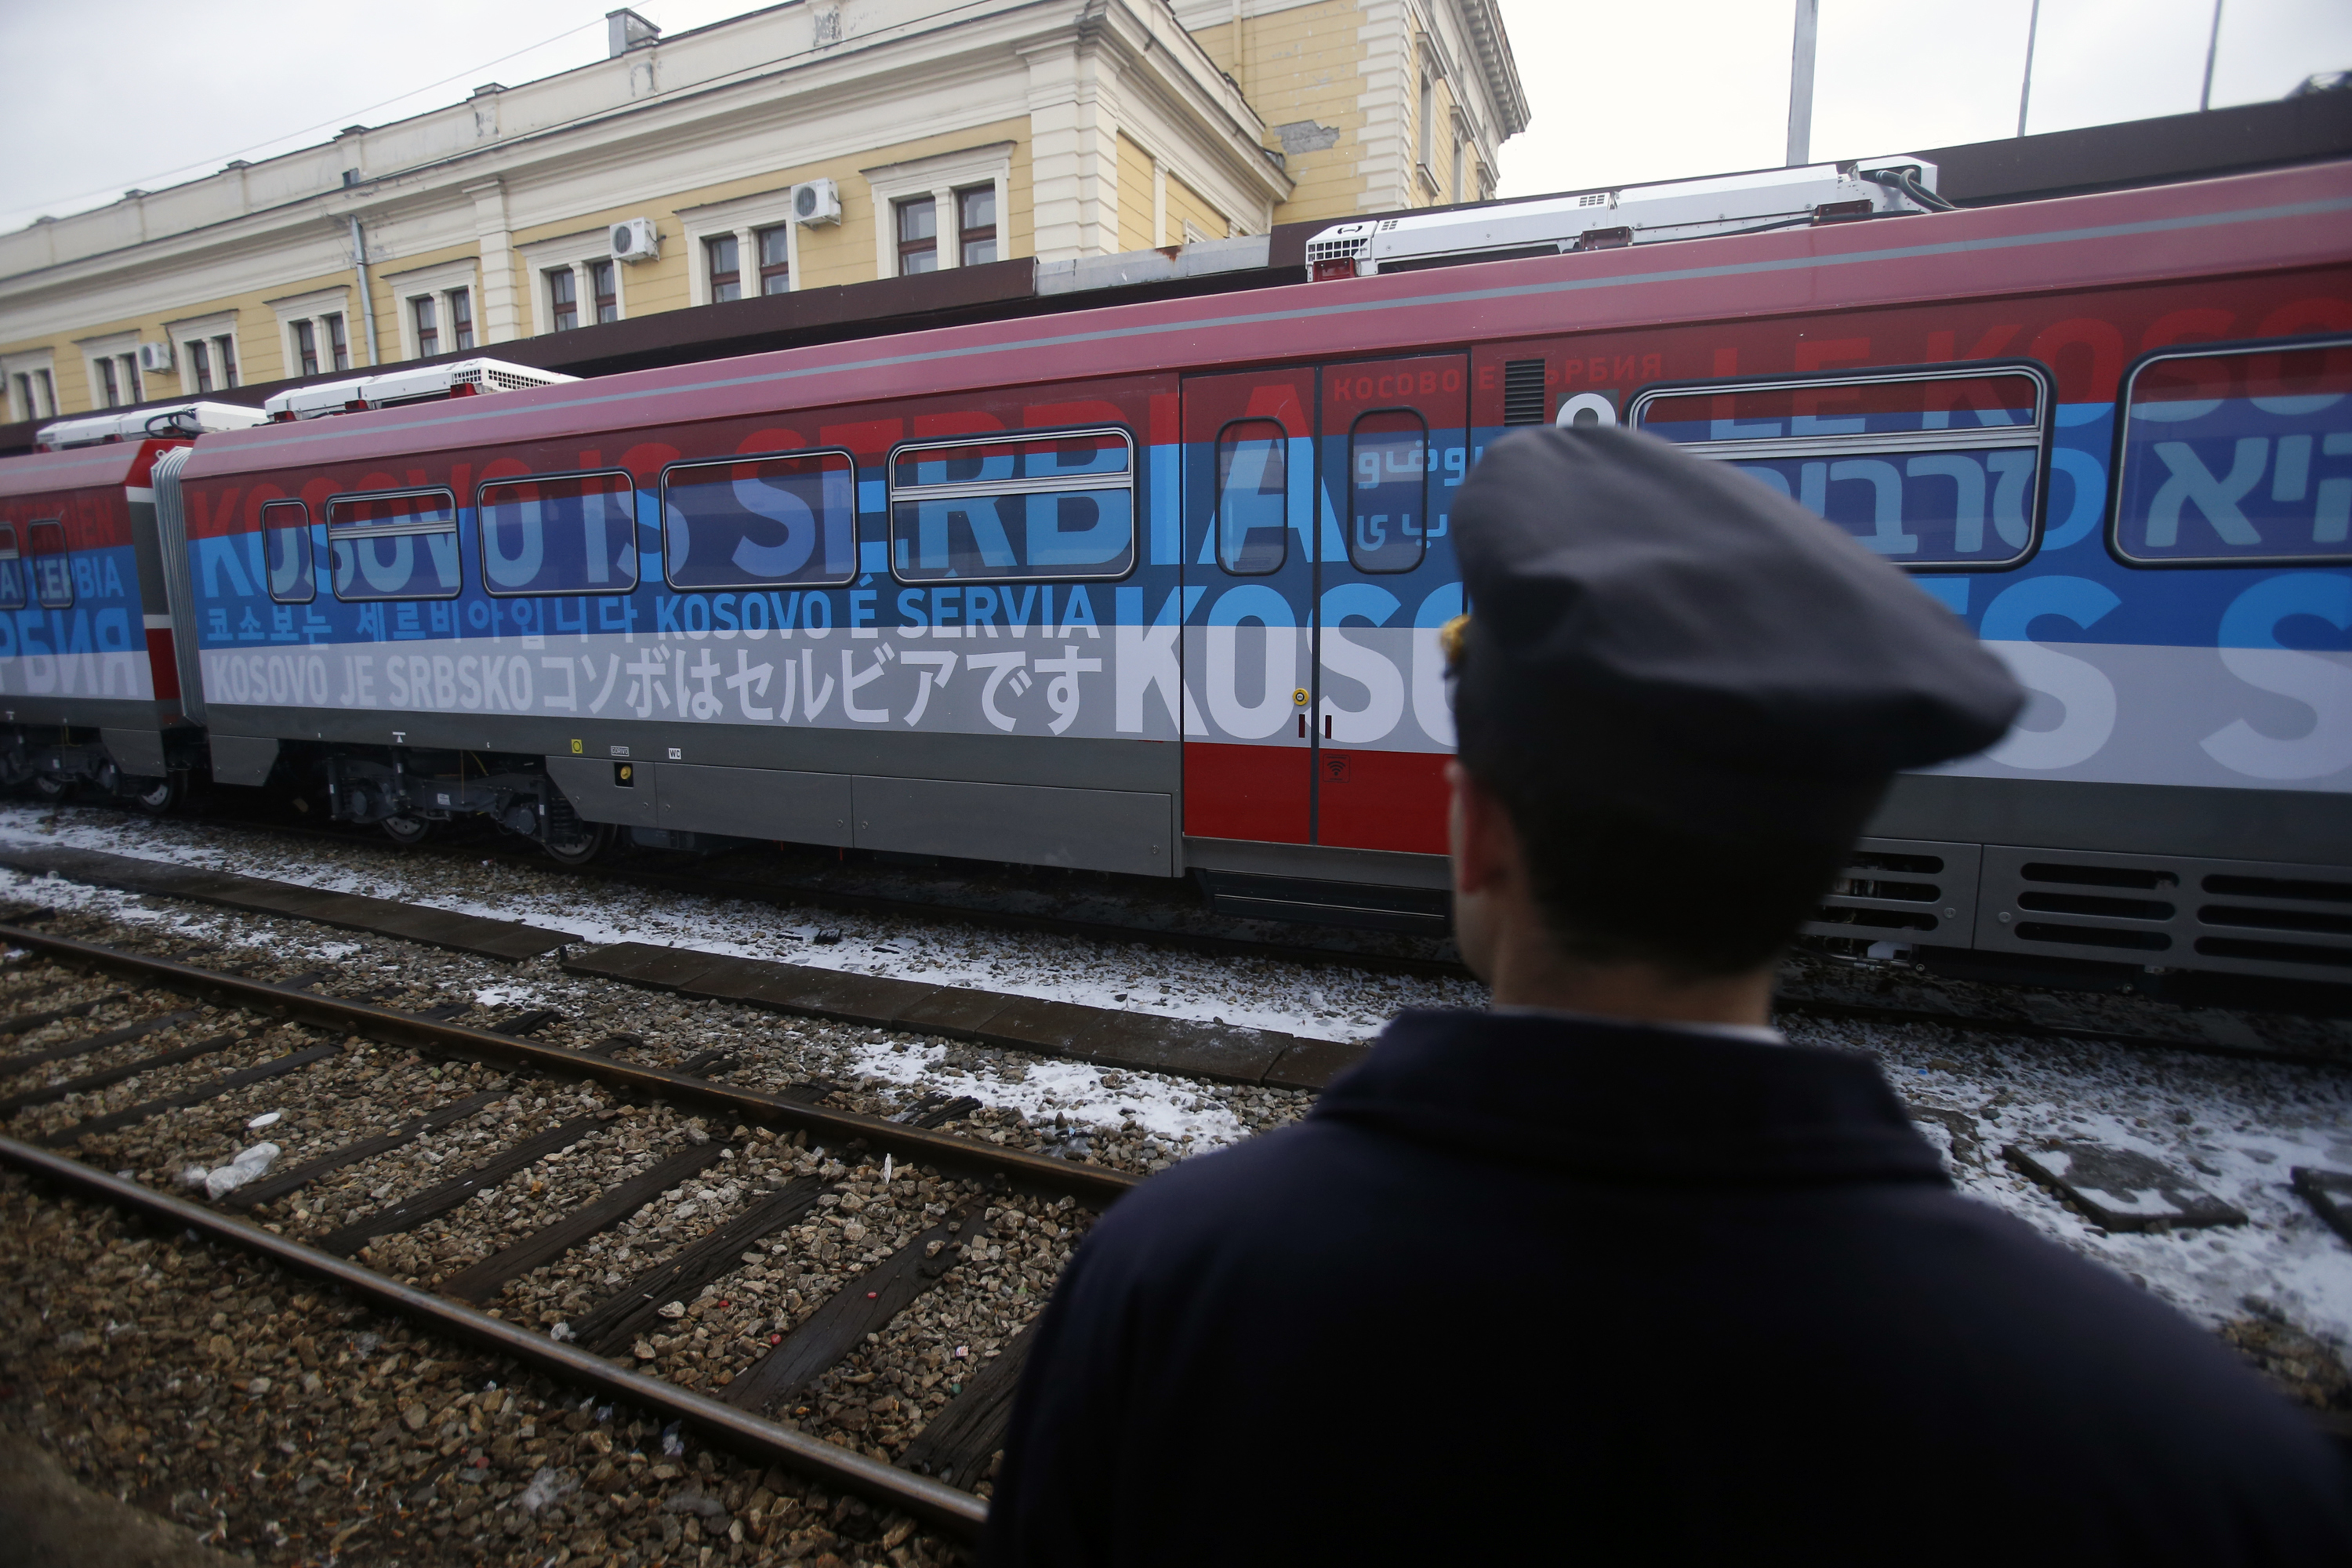 На влака има надписи ”Косово е сръбско” на 20 езика